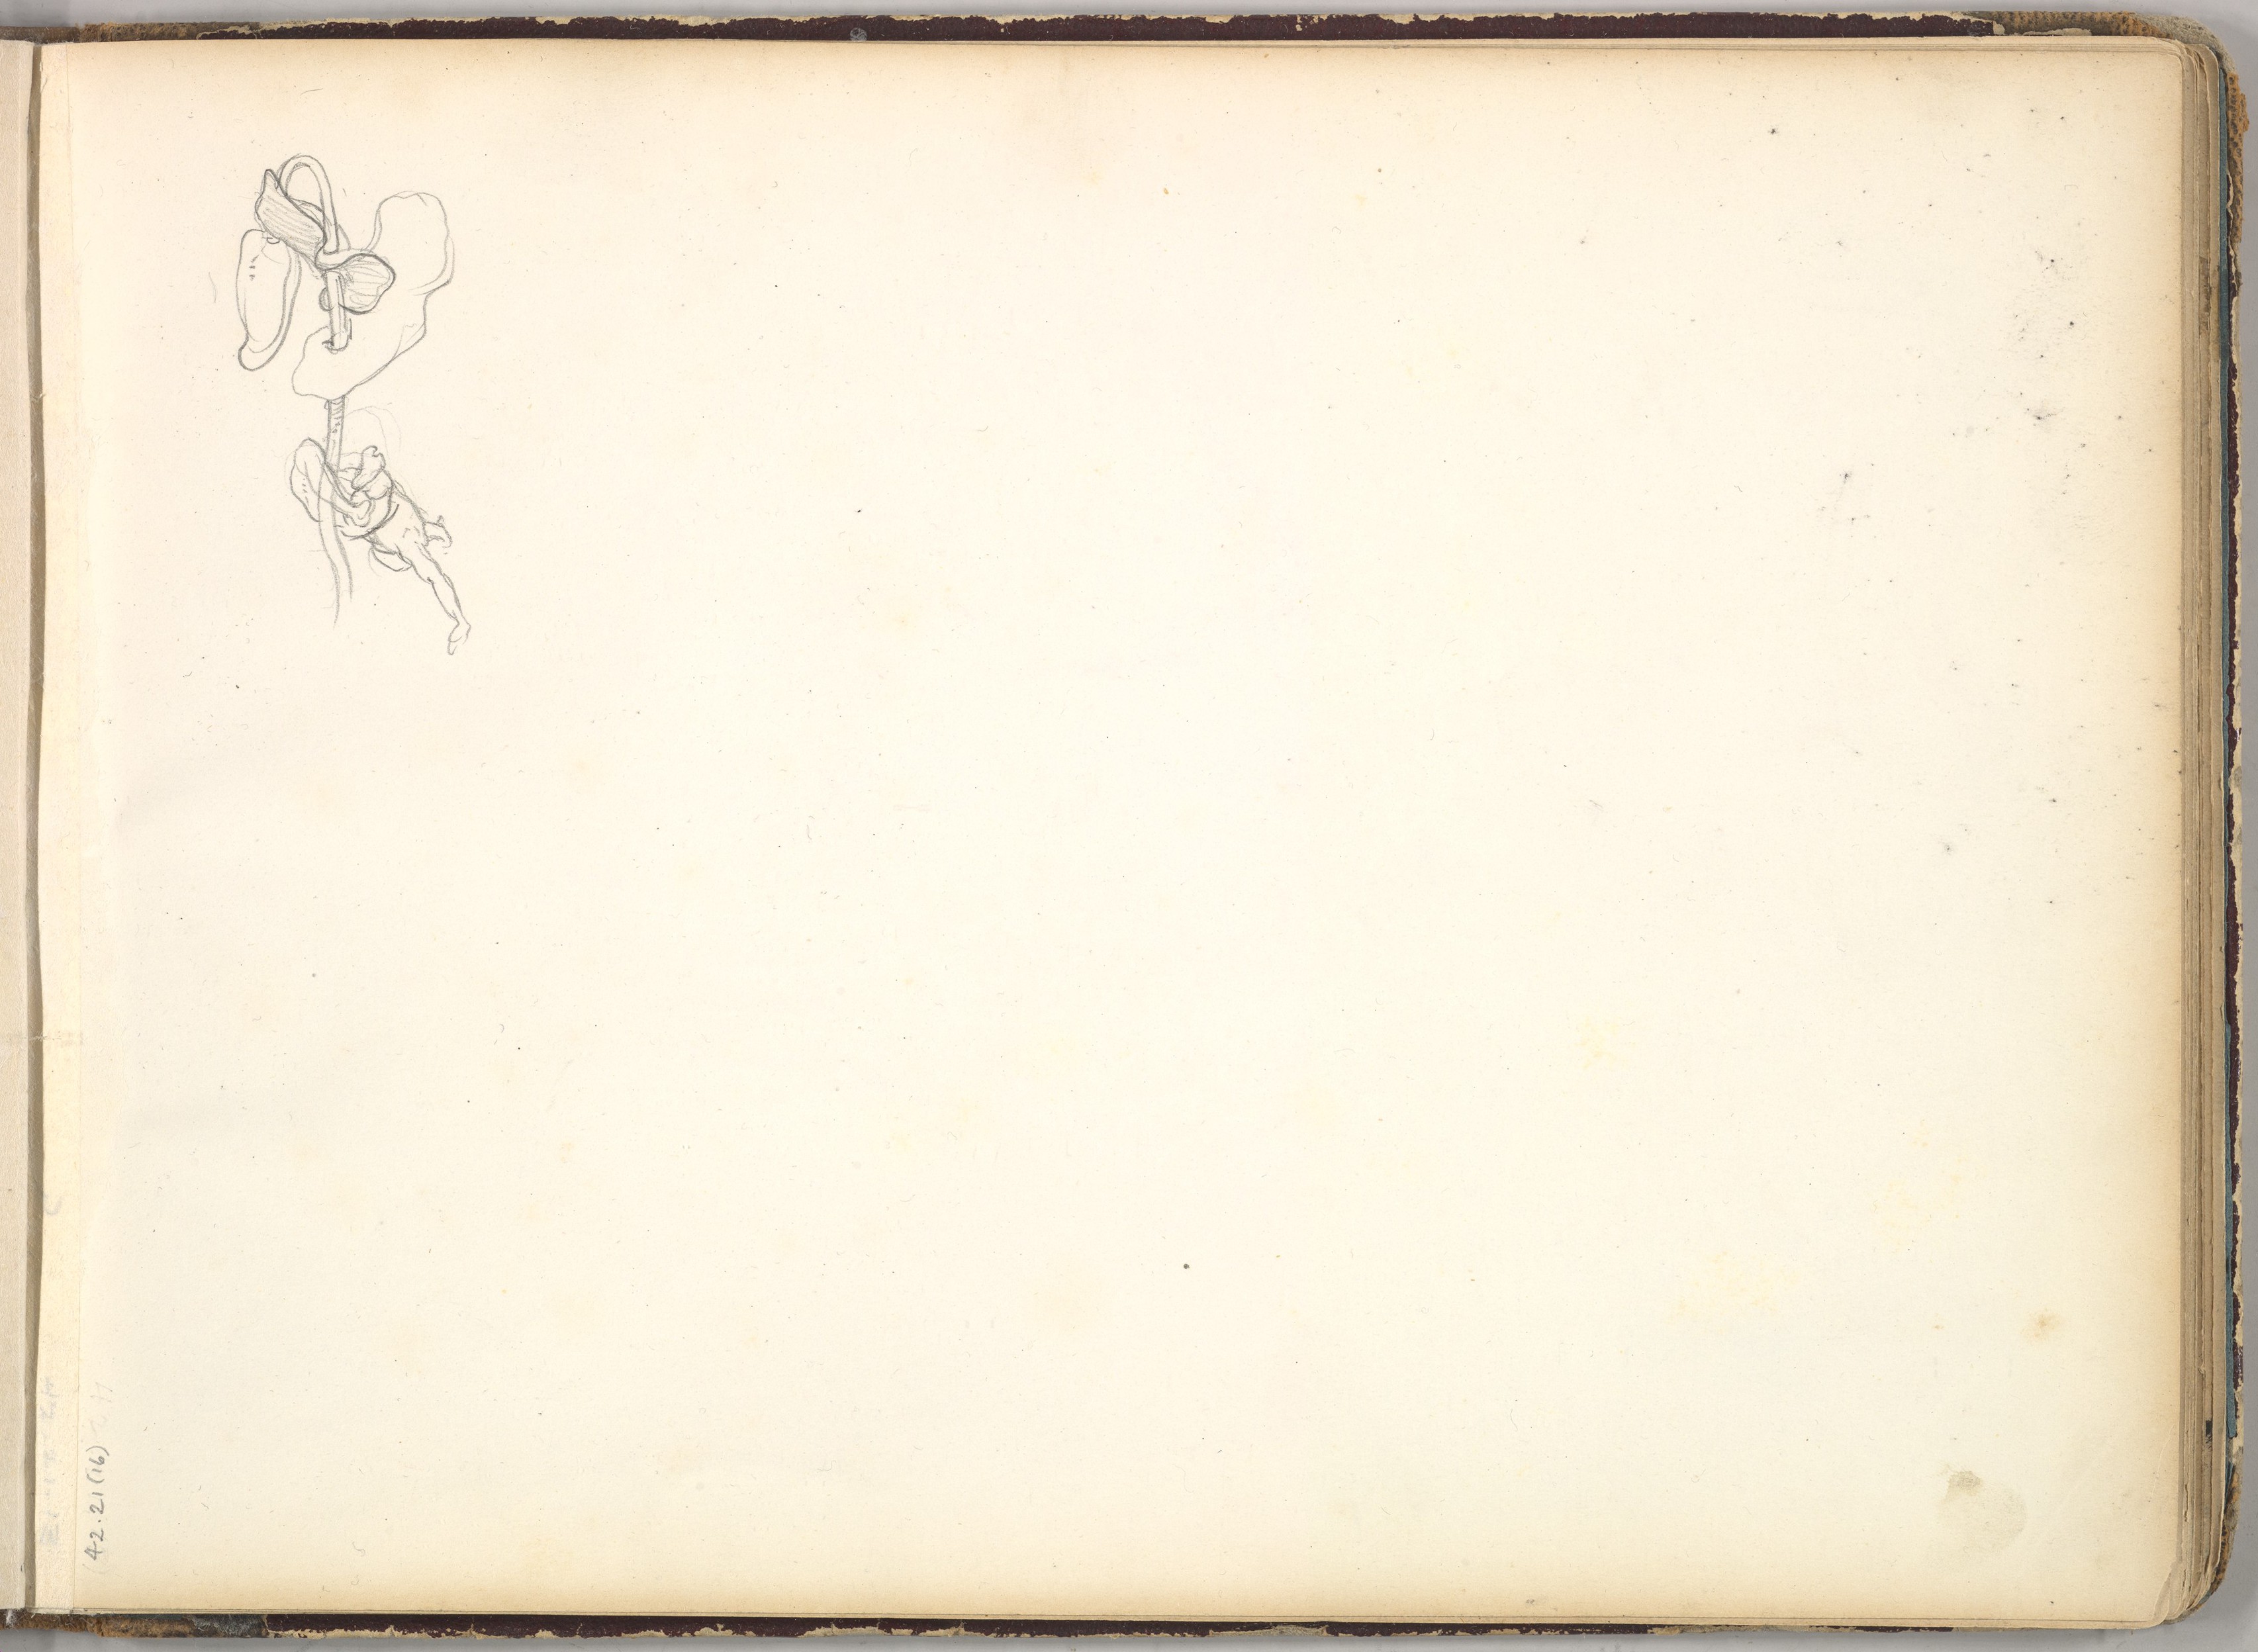 В книге 6 листов. Бумага 19 век. Лист 19 века рисунок. Фредерик лист. Скорбный лист 19 век.